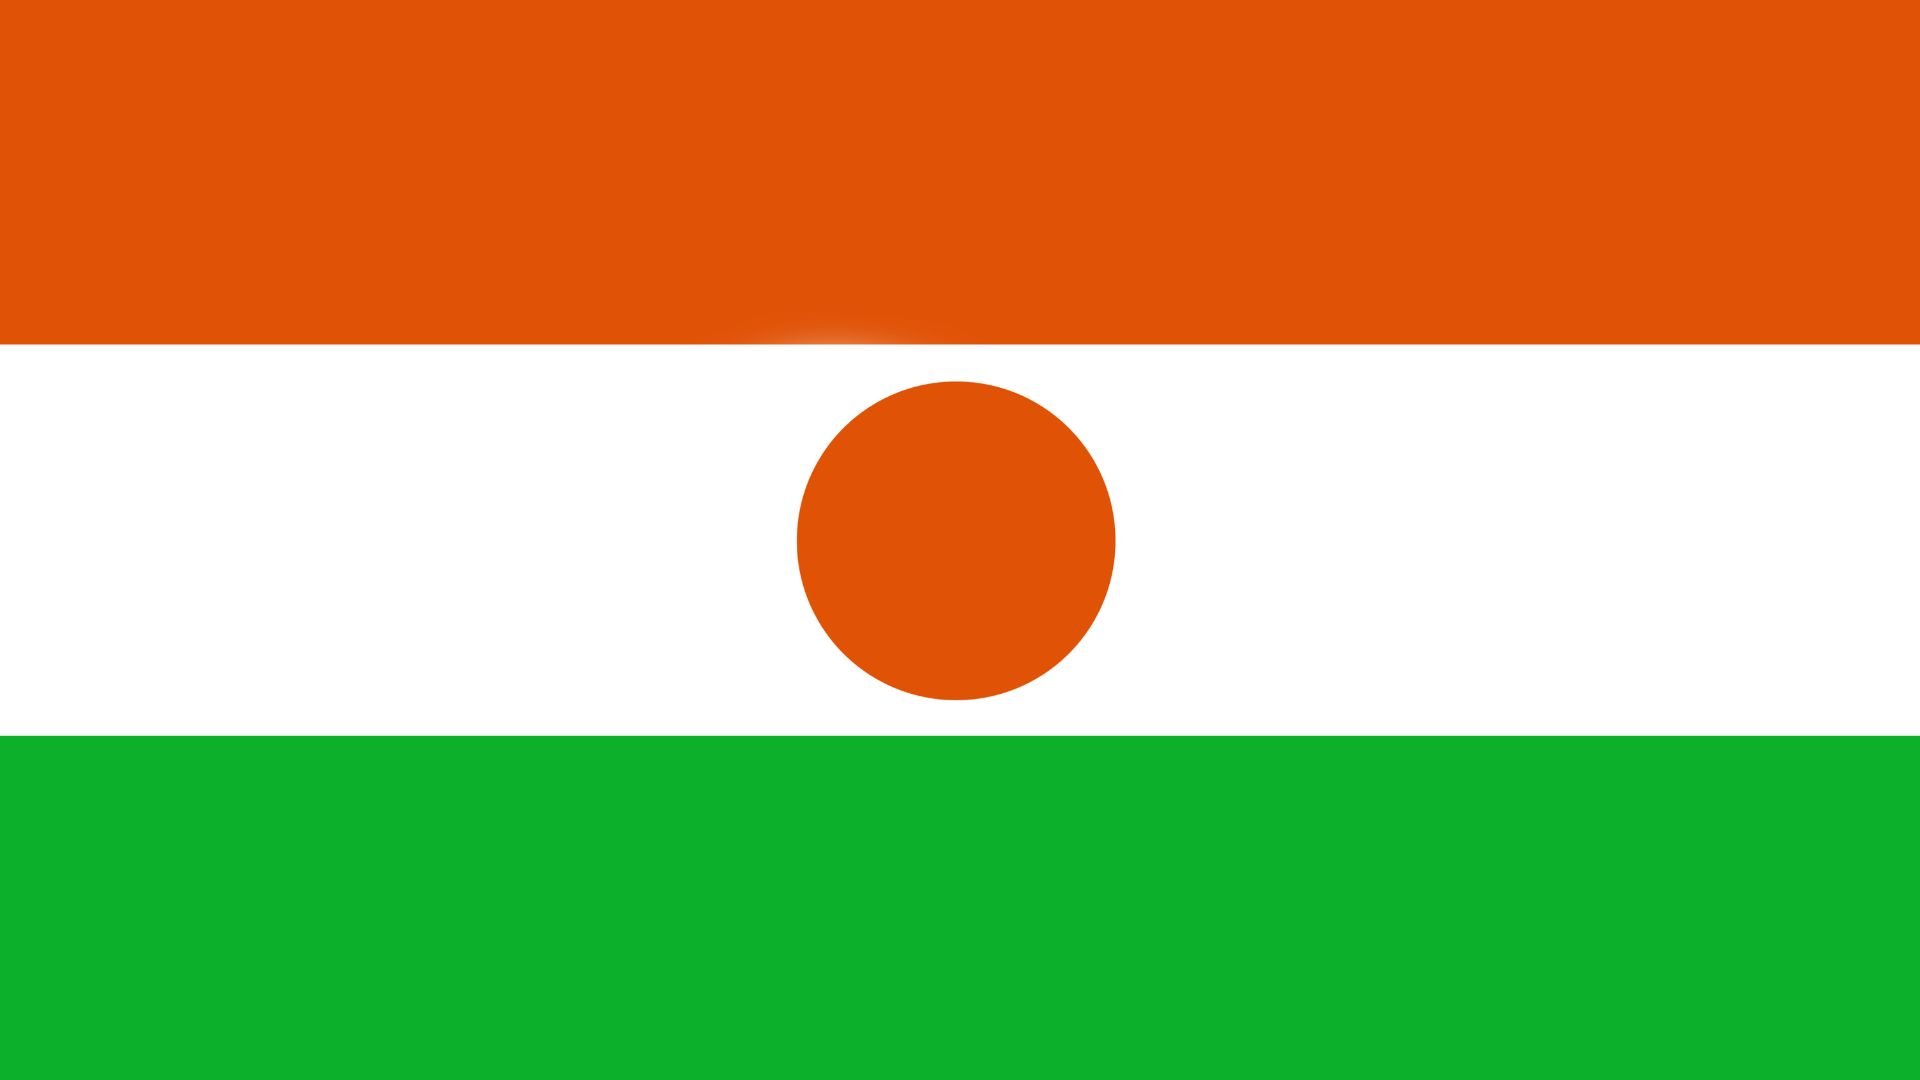 A bandeira possui três faixas horizontais de mesmo tamanho: laranja na parte de cima, branco ao centro e verde na parte de baixo. No centro da faixa branca existe um círculo de cor laranja. É semelhante a bandeira da Índia.